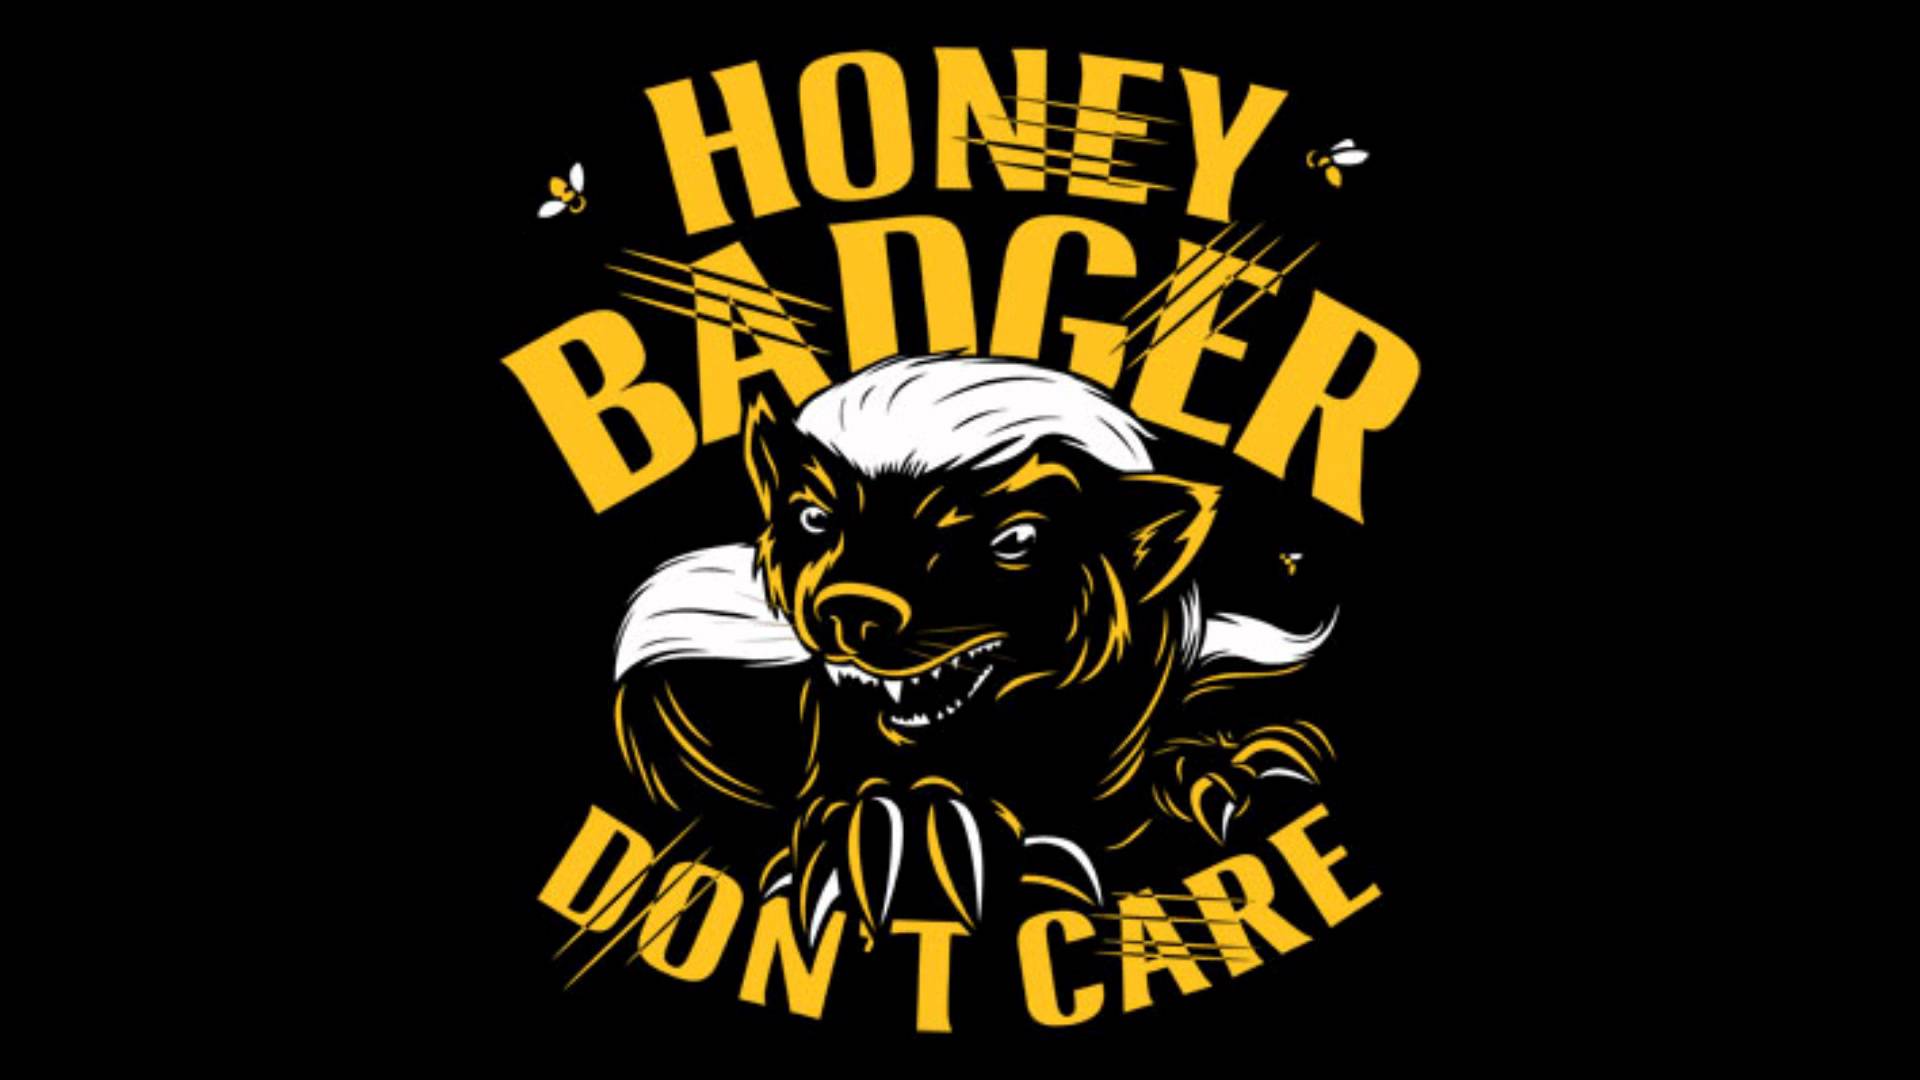 Honey Badger (Don't Care)